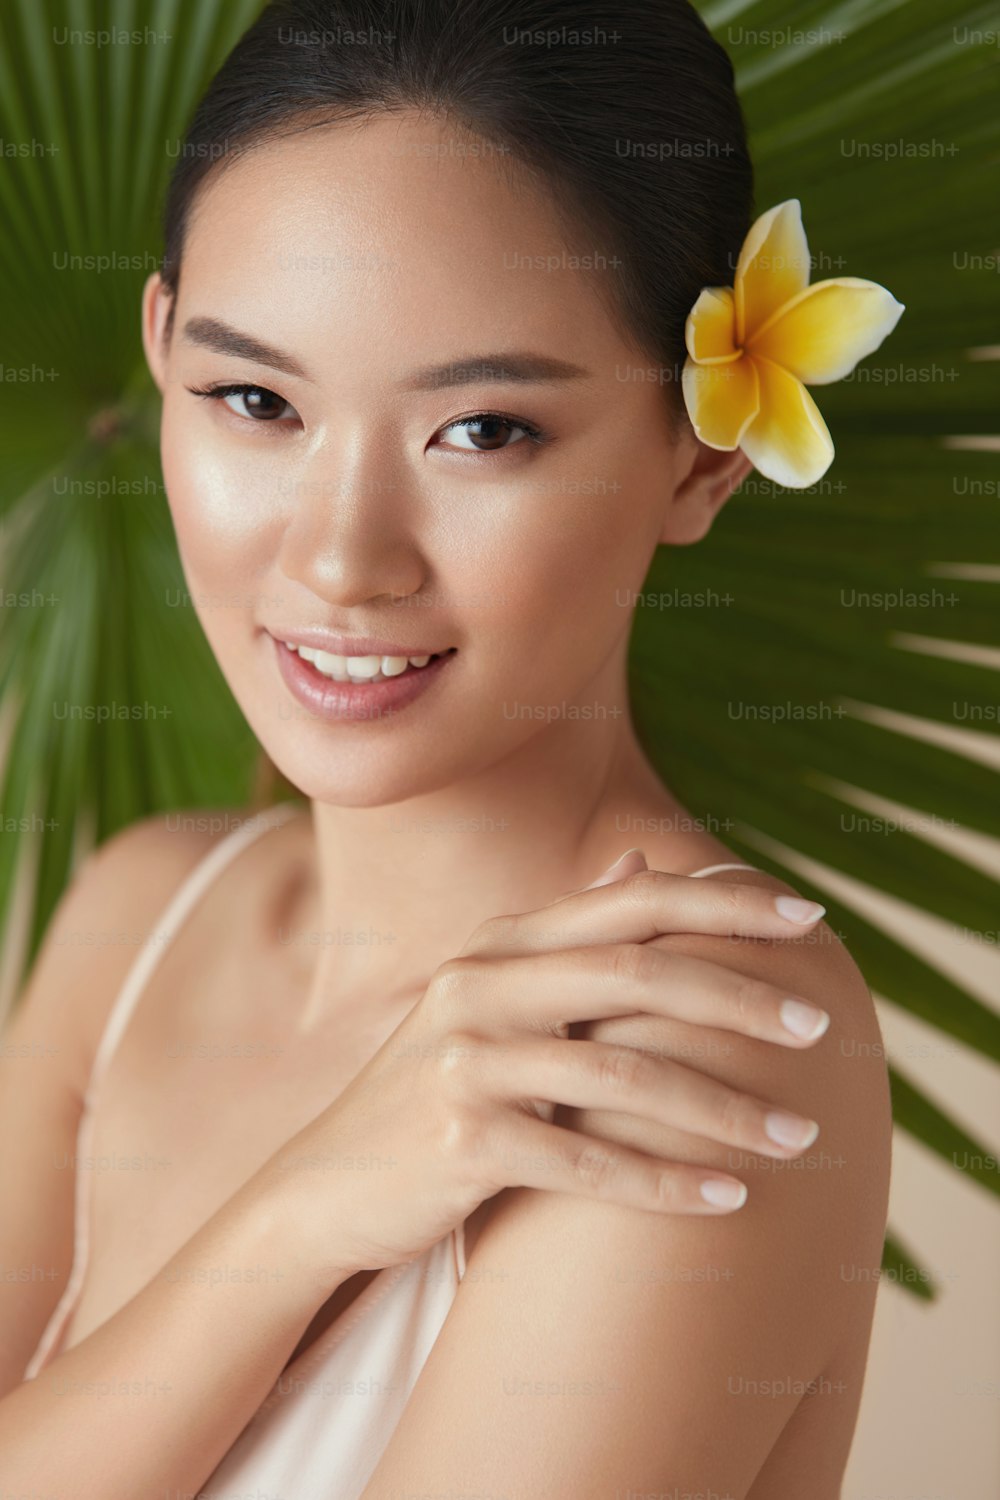 Beleza. Modelo perto da palma da mão com flor no cabelo. Mulher asiática sensível tocando retrato do ombro no fundo da planta tropical. Menina bonita desfrutando de pele hidratada depois de usar cosméticos orgânicos naturais.